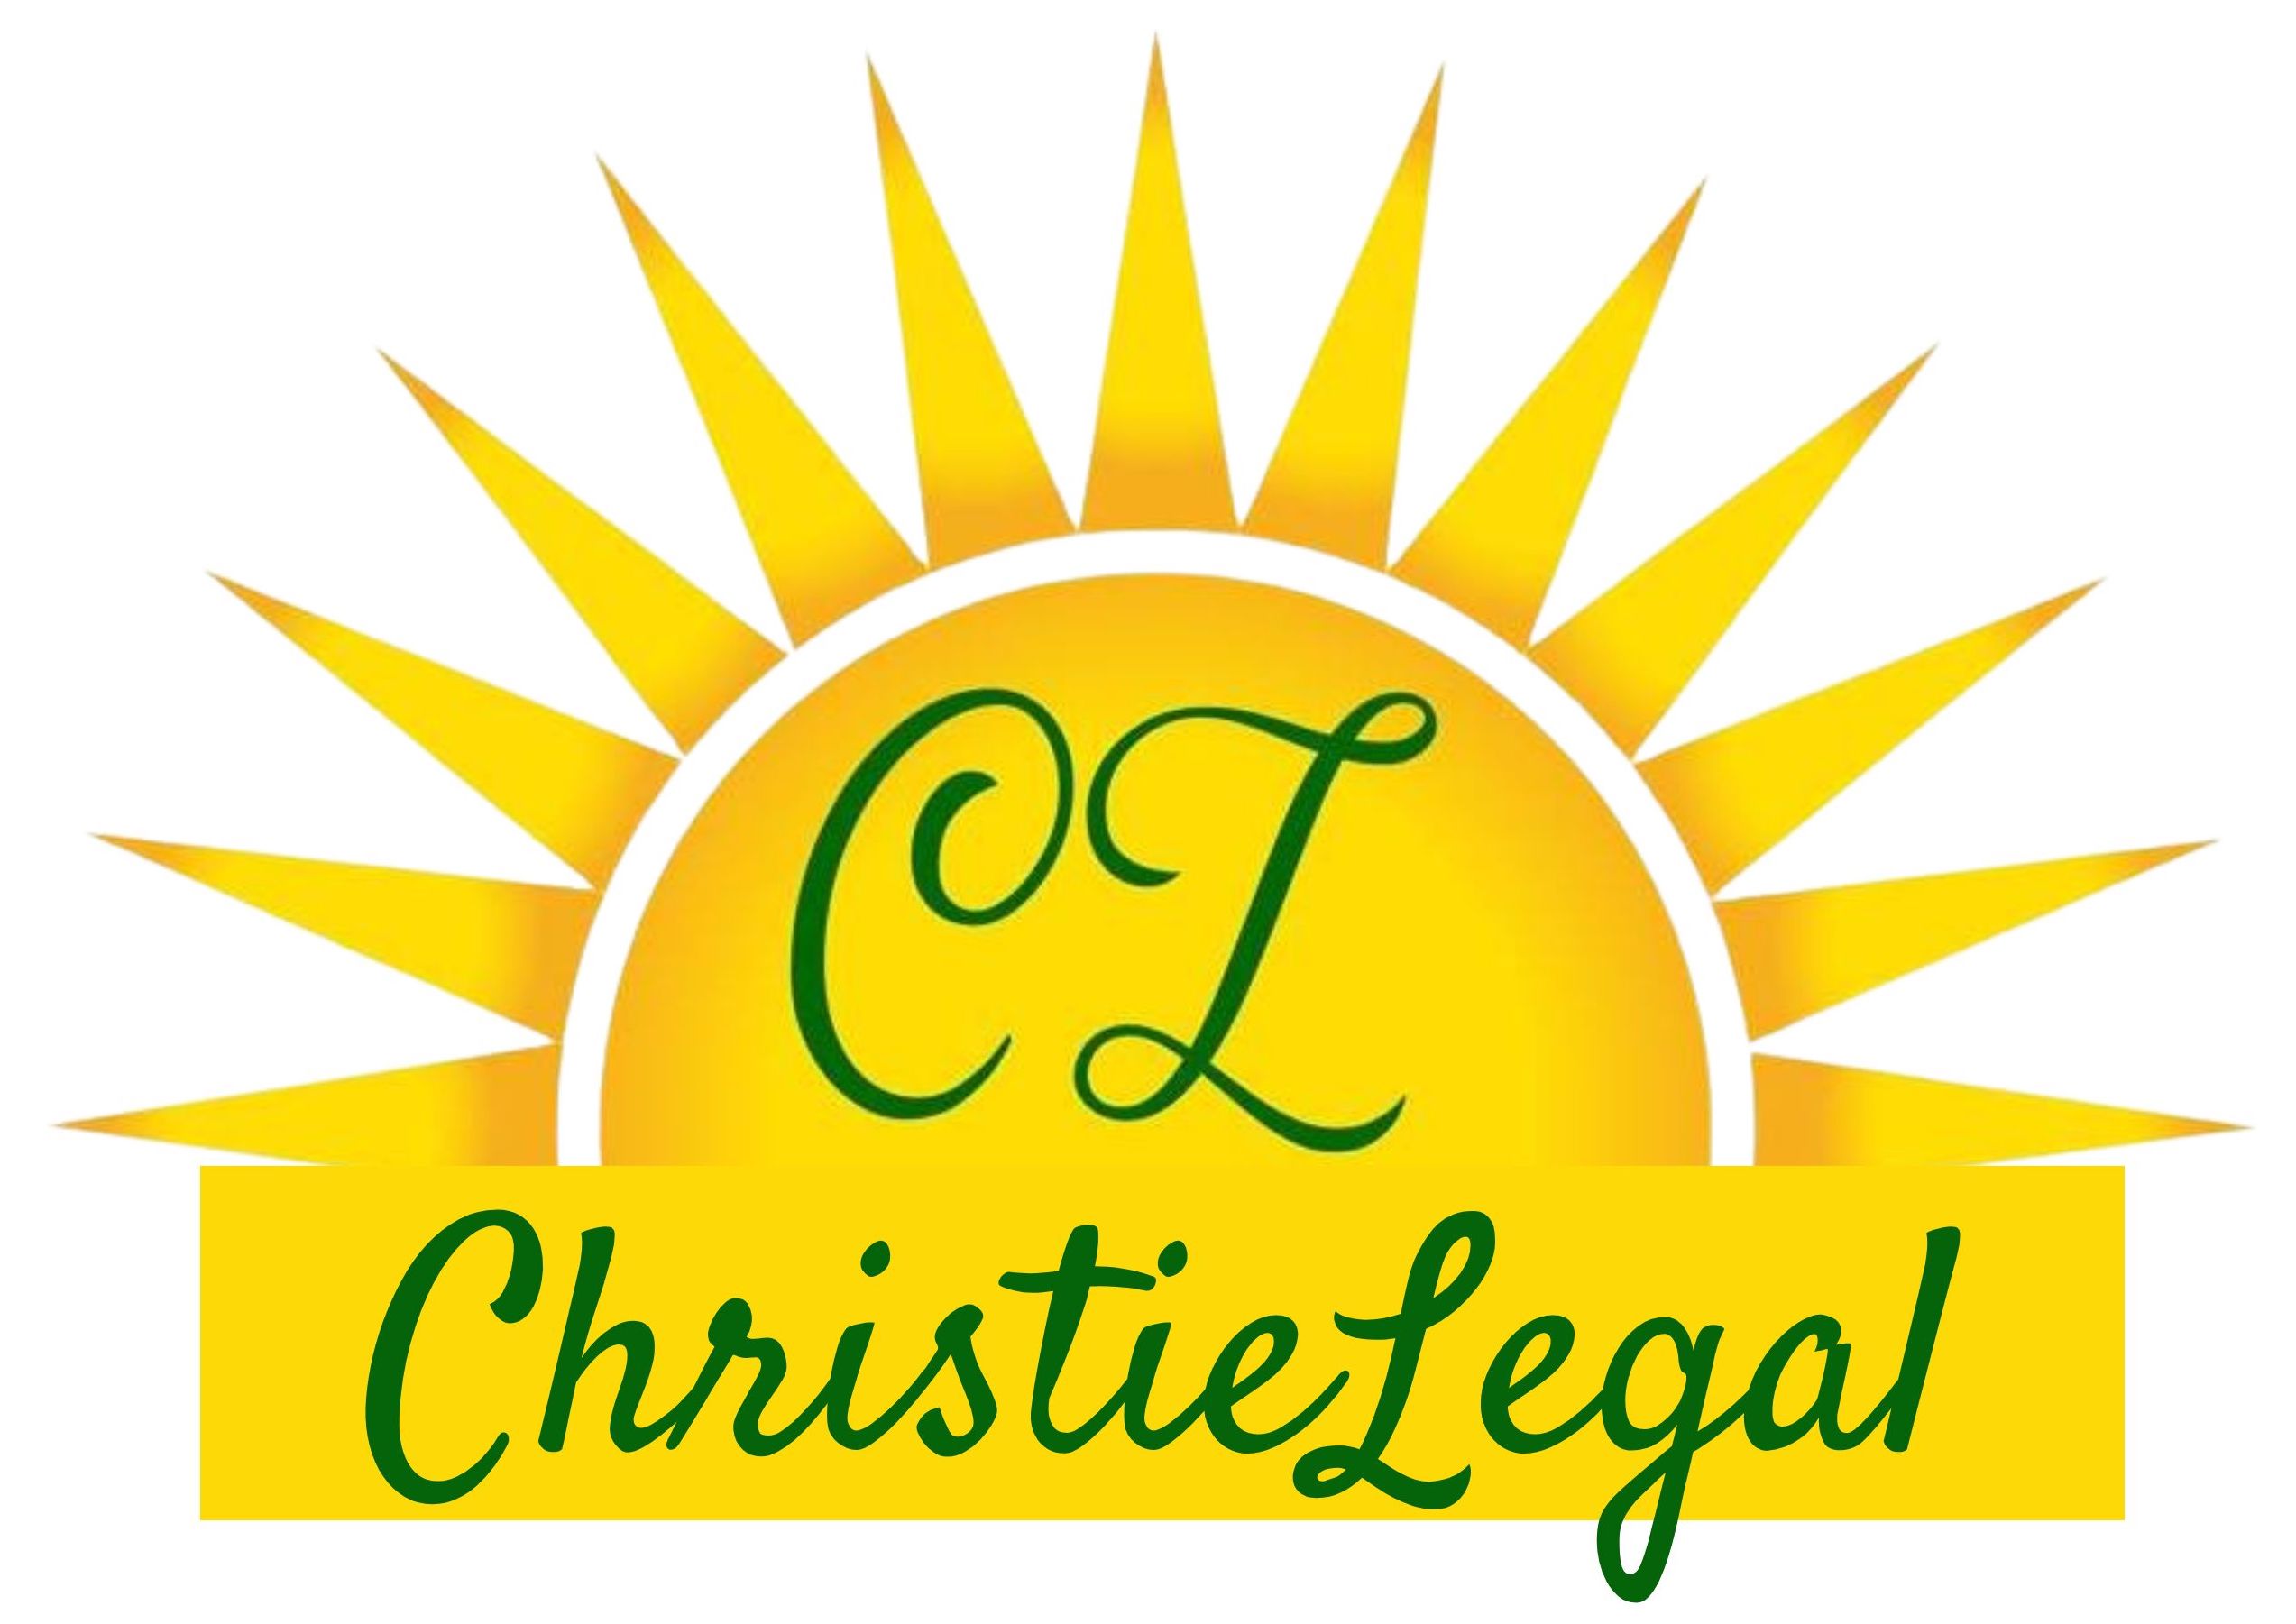 Christie Legal - 1